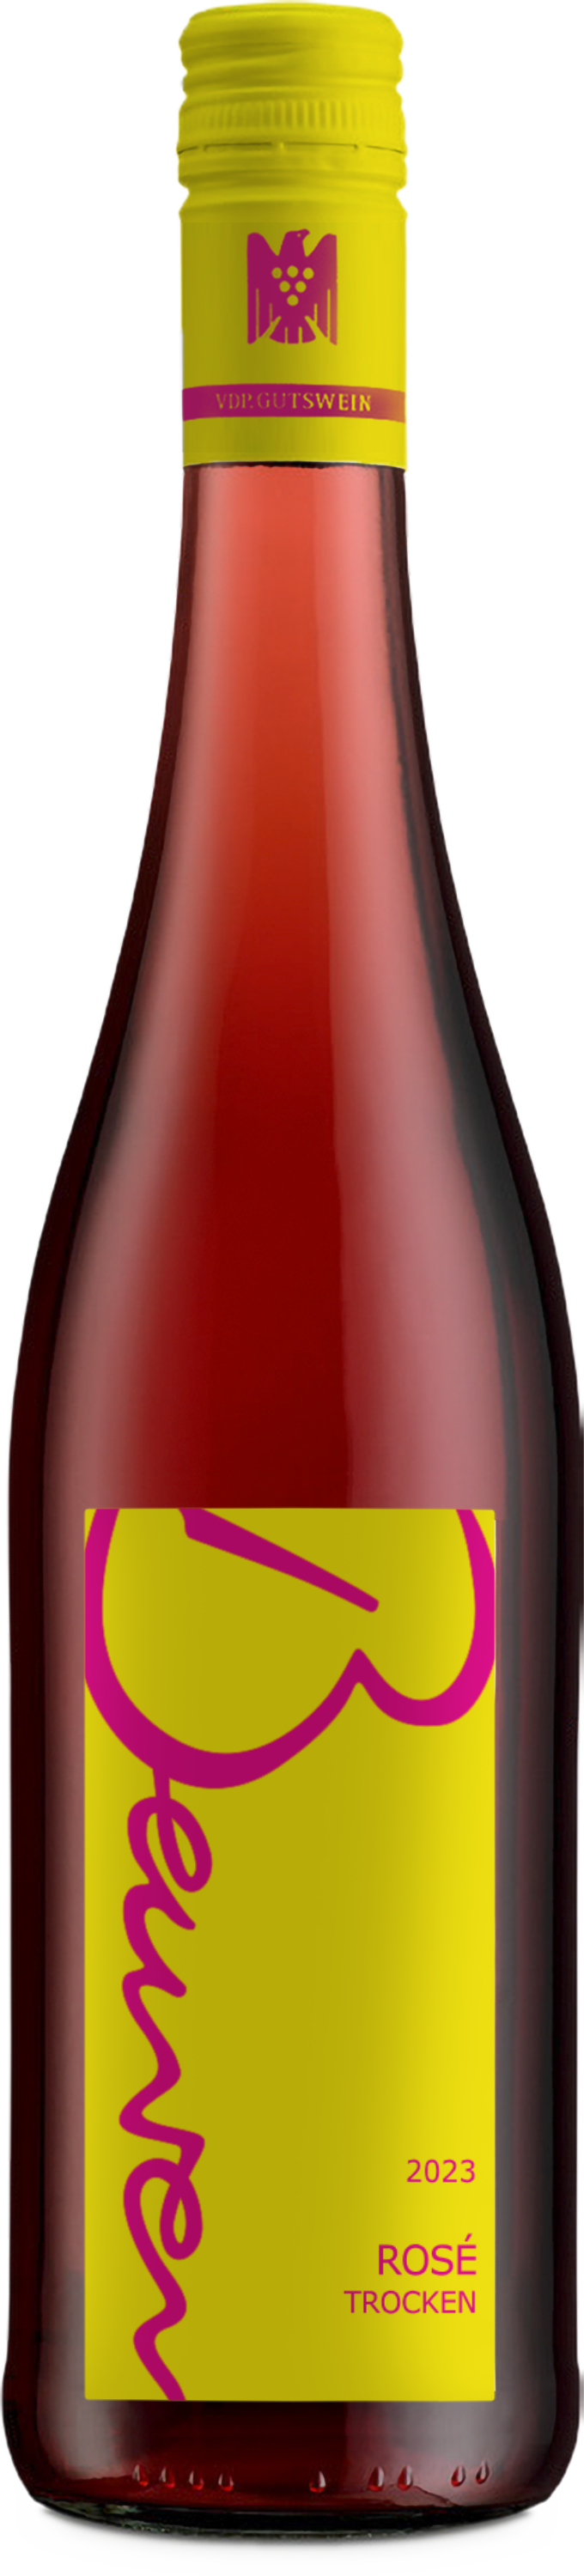 Weingut Beurer Rosé 2023 Trocken  Gutswein -   QbA Schwabischer Landwein